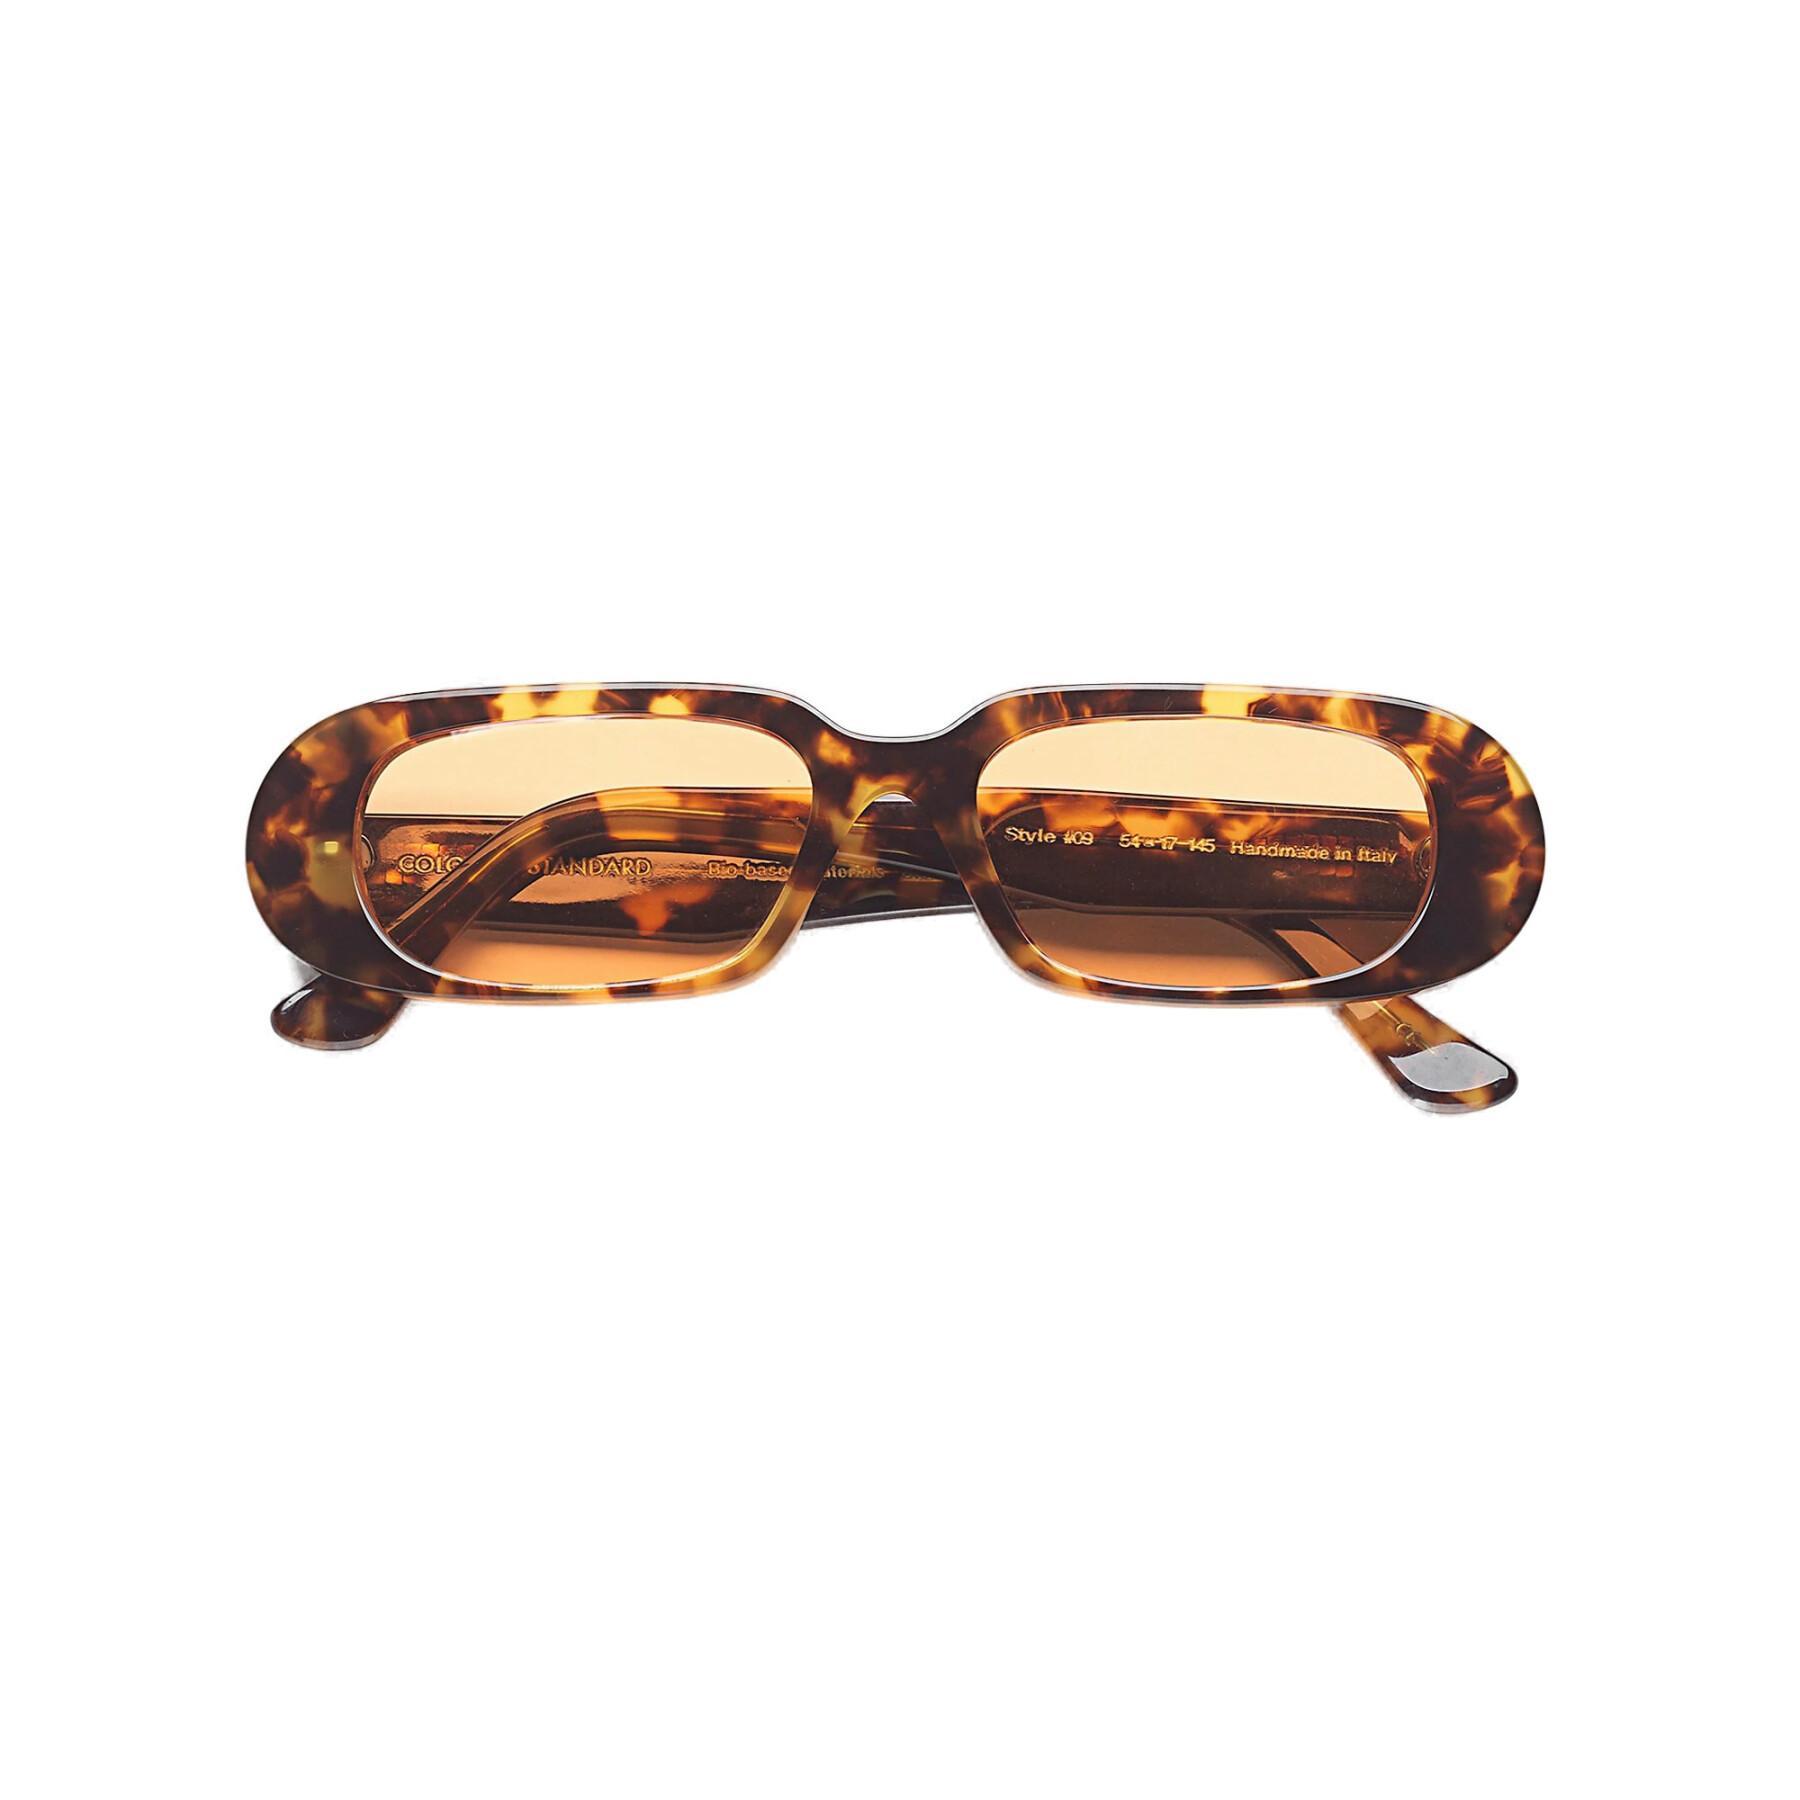 Okulary przeciwsłoneczne Colorful Standard 09 classic havana/orange